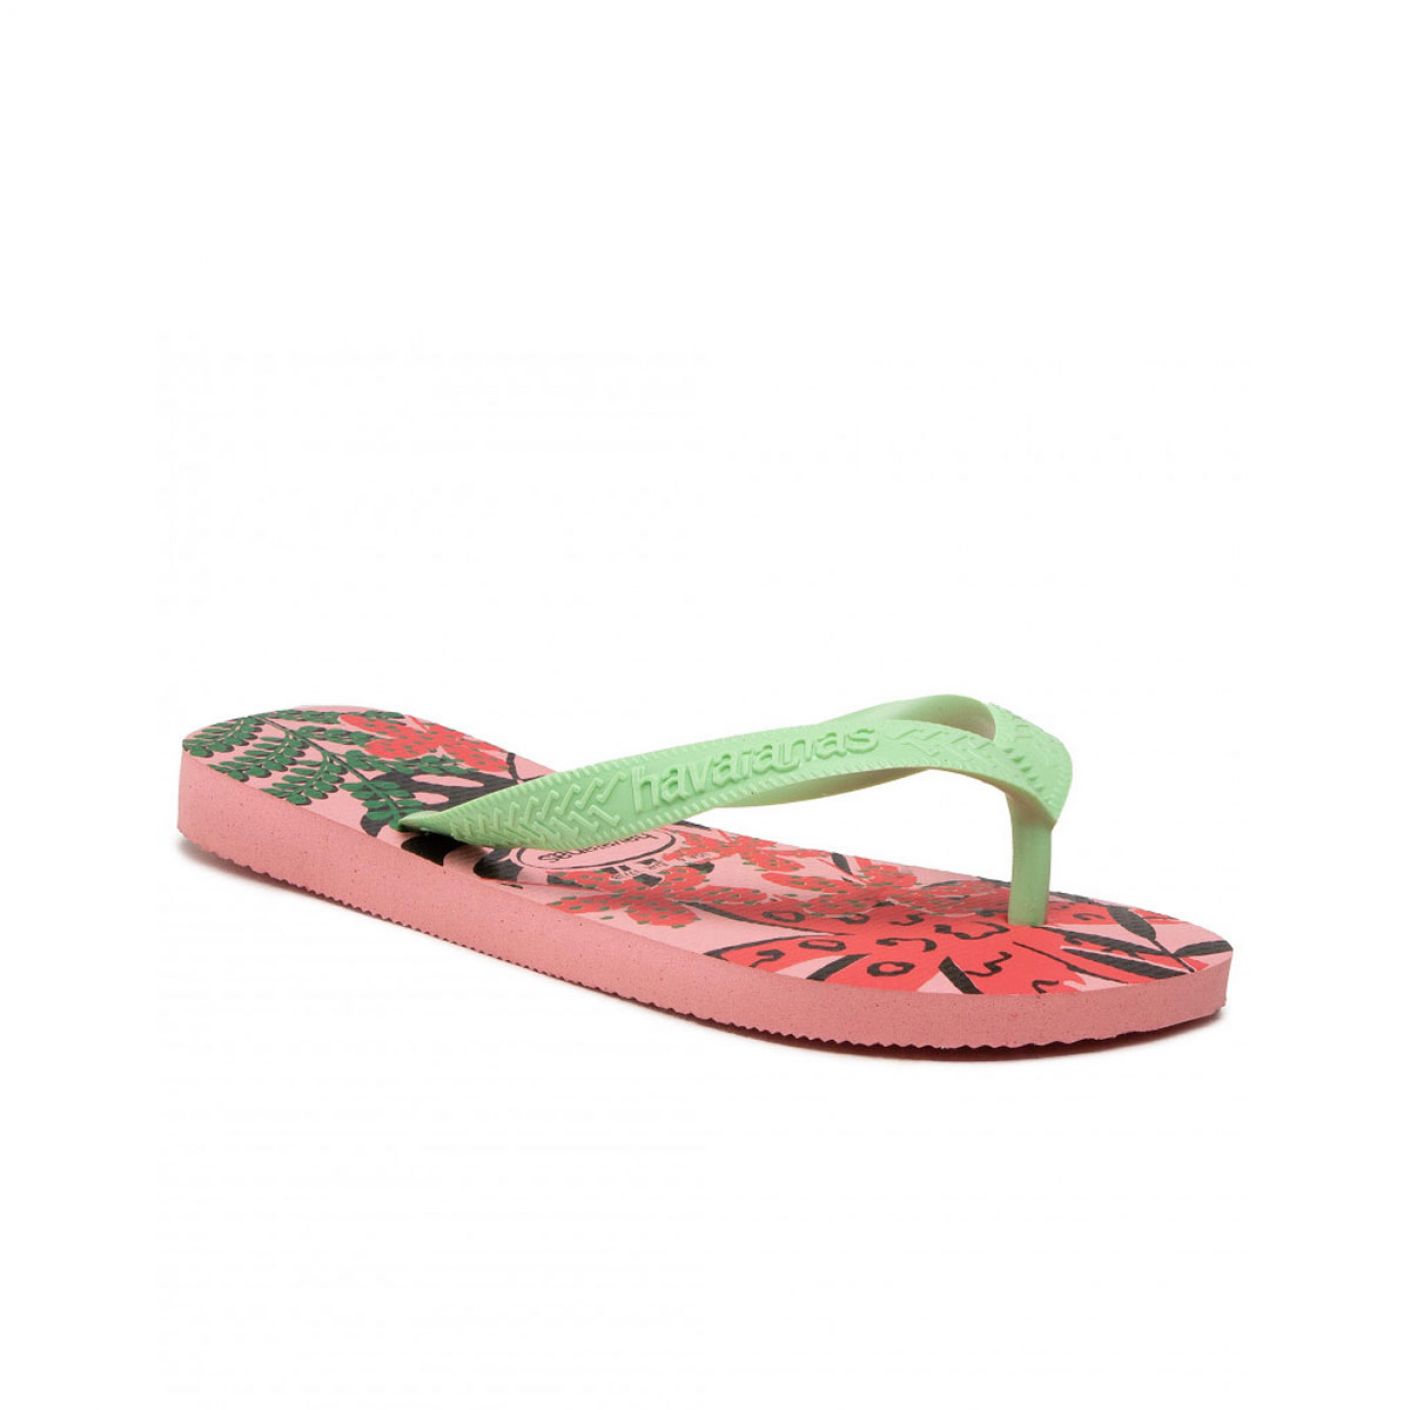 Havaianas Flip Flops Top Summer Joy Macaron Pink